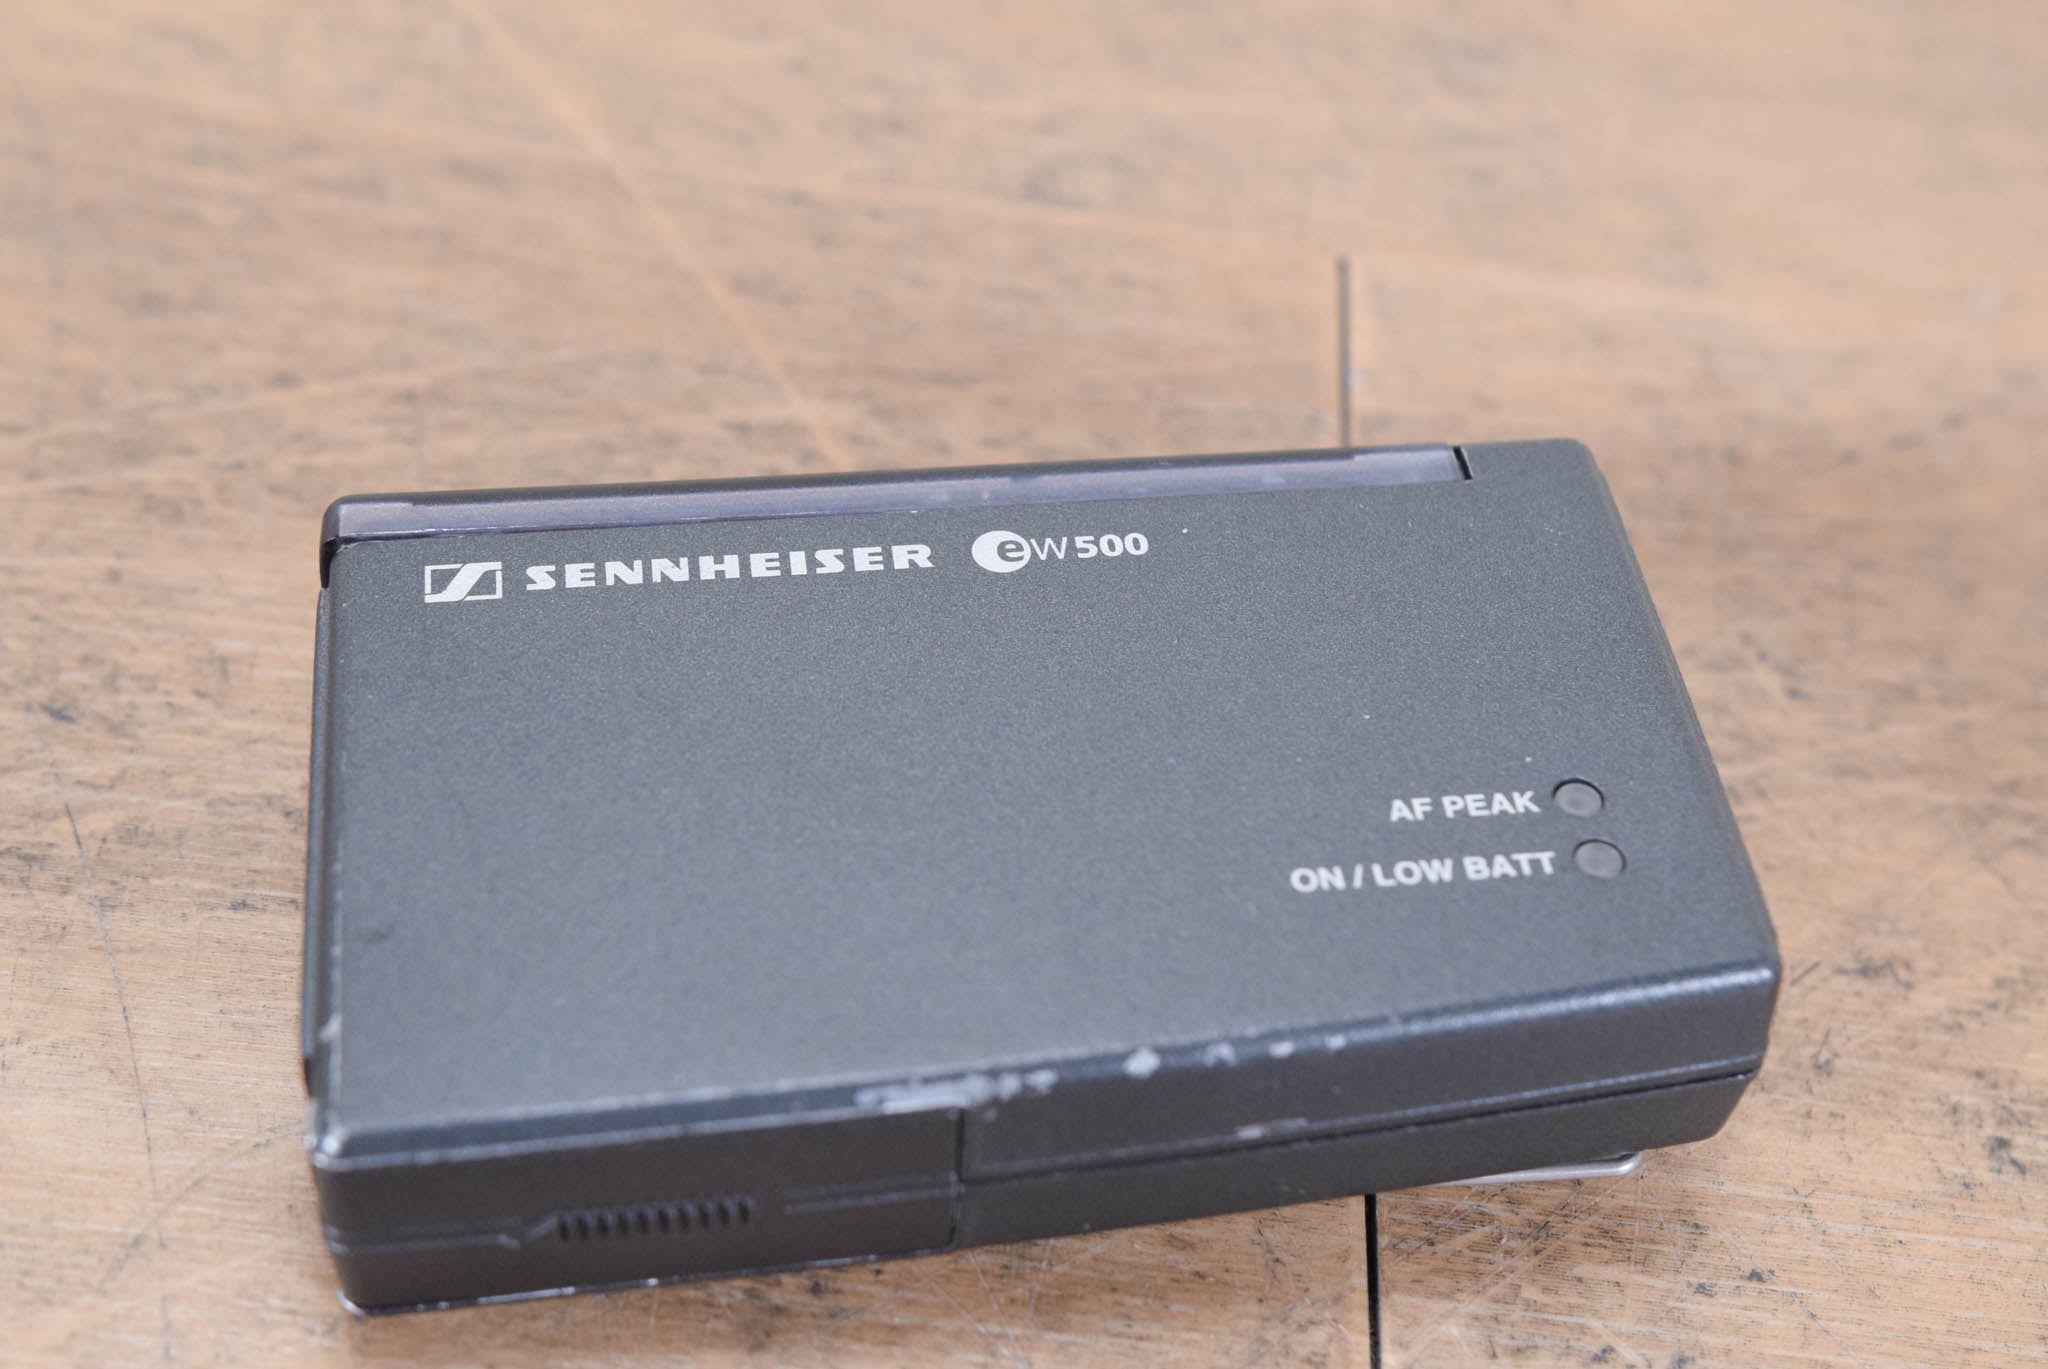 Sennheiser SK 500 Belt Pack Transmitter - 630-662 MHz